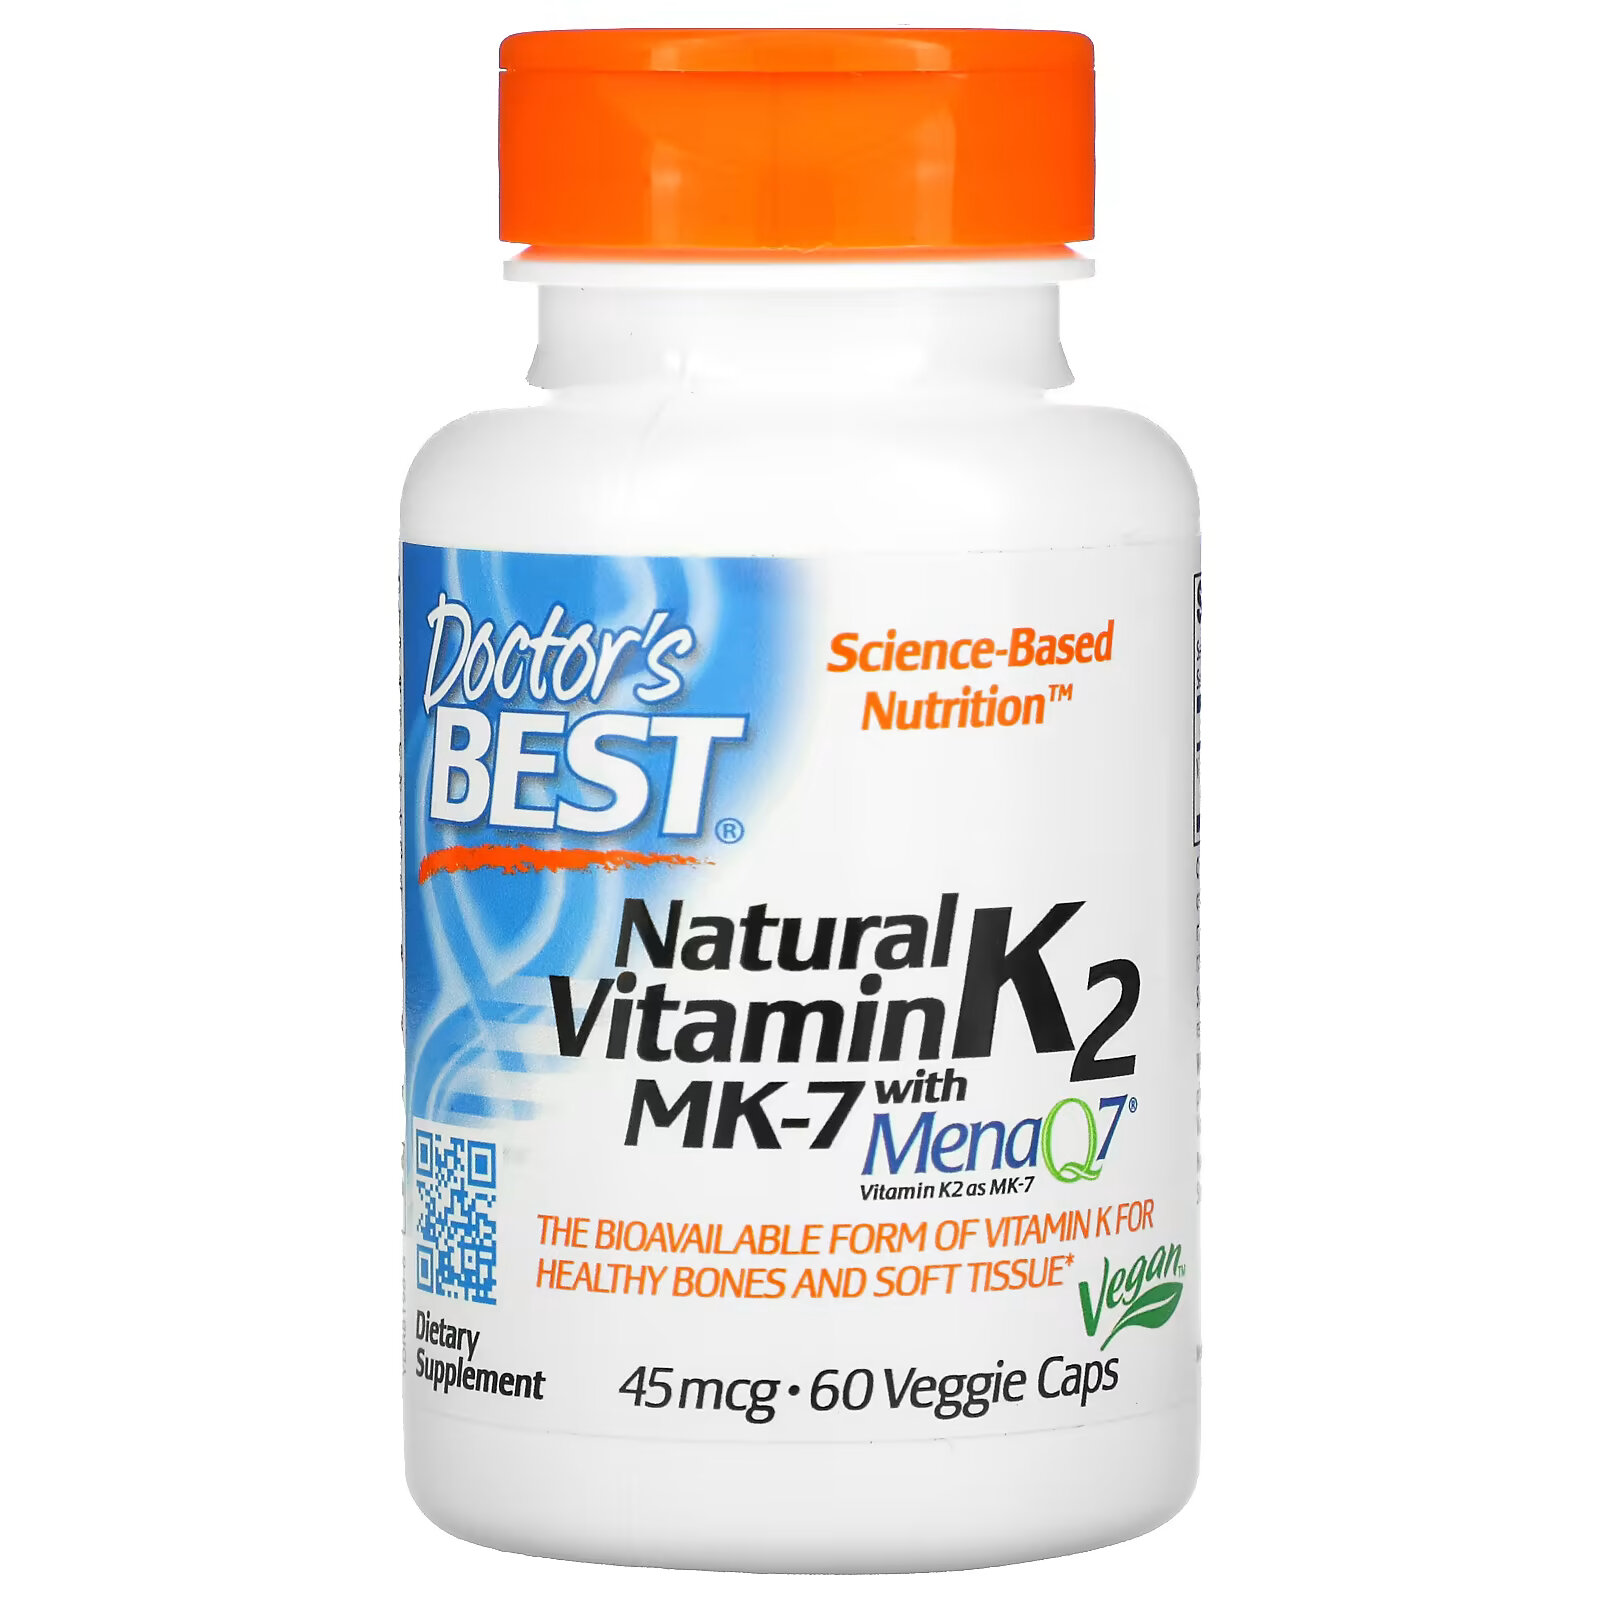 Doctor's Best витамин K2 MK-7 с MenaQ7, 45 мкг, 60 вегетарианских капсул doctor s best витамин k2 mk 7 с menaq7 45 мкг 60 вегетарианских капсул